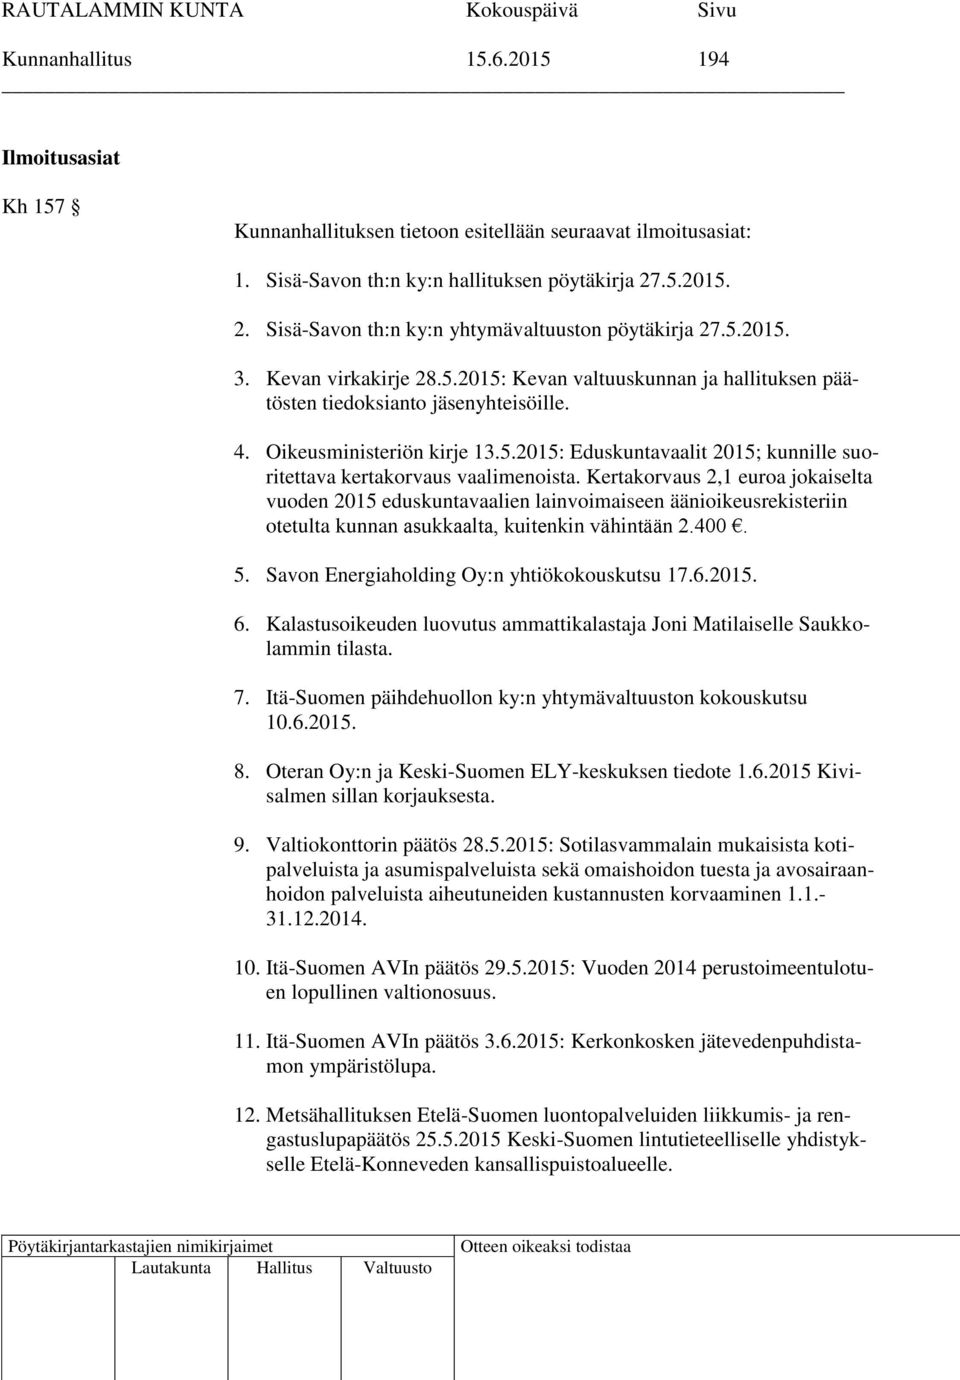 Oikeusministeriön kirje 13.5.2015: Eduskuntavaalit 2015; kunnille suoritettava kertakorvaus vaalimenoista.